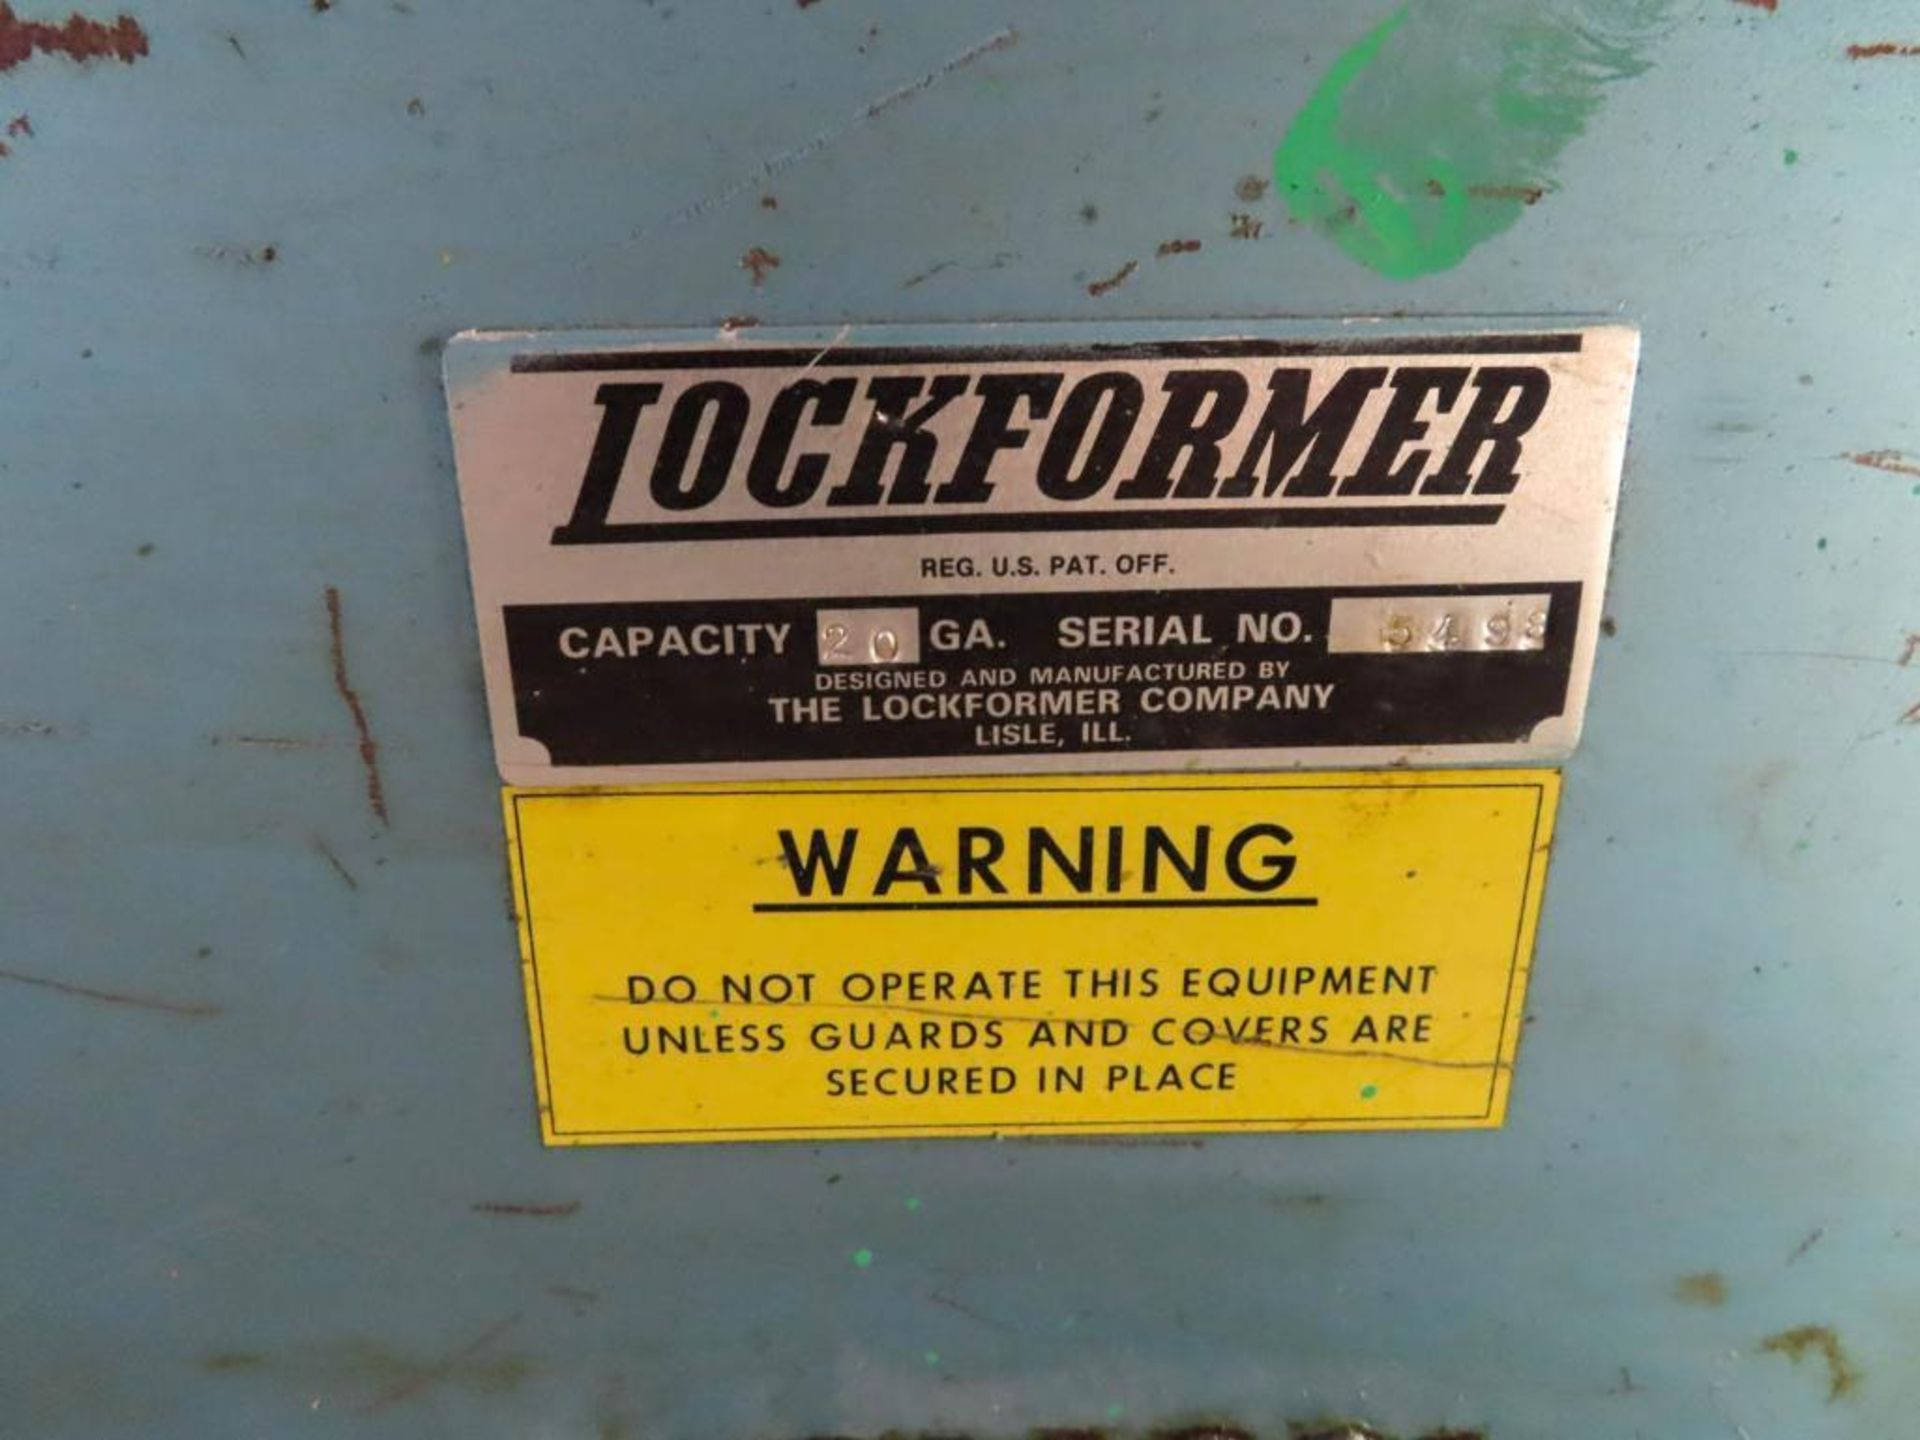 Lockerformer 20 Gage, S/N:5498 - Image 2 of 3